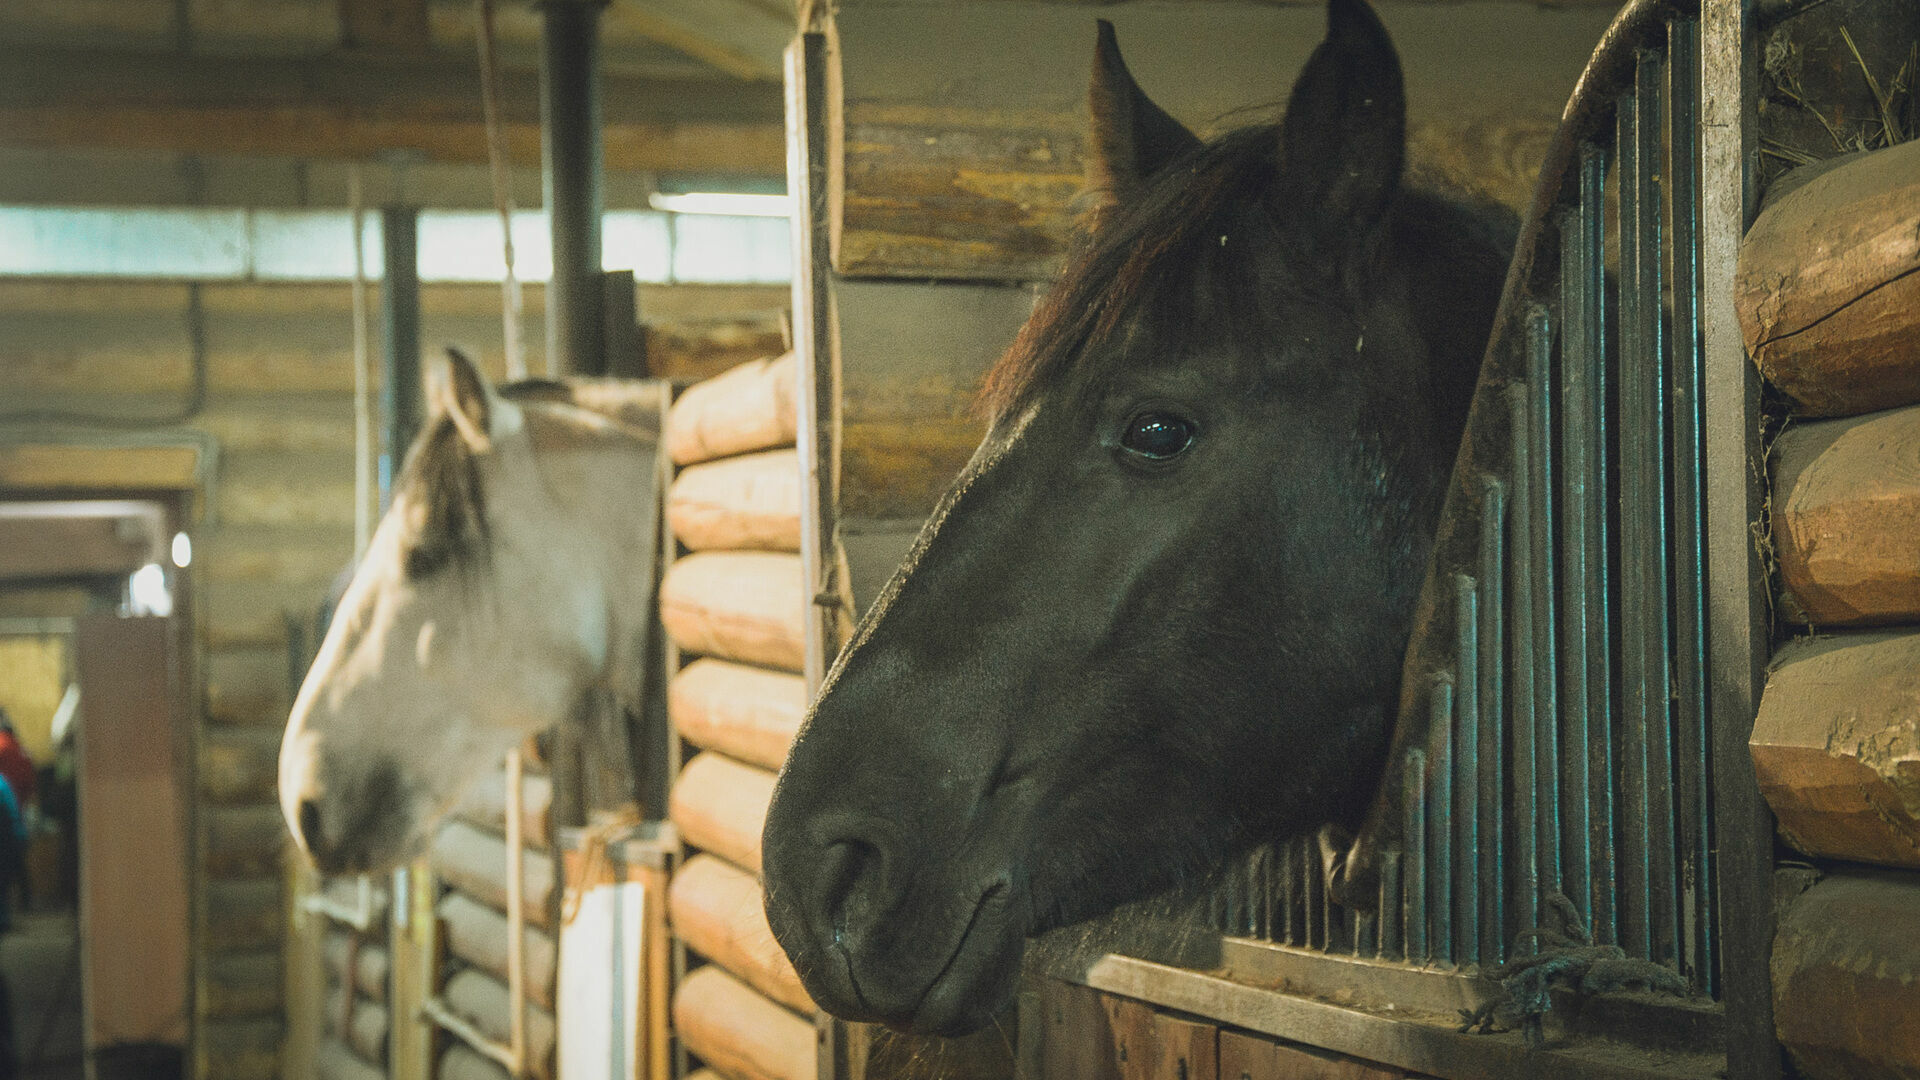 Огромная конюшня с лошадьми загорелась в Нижегородской области 8 июня